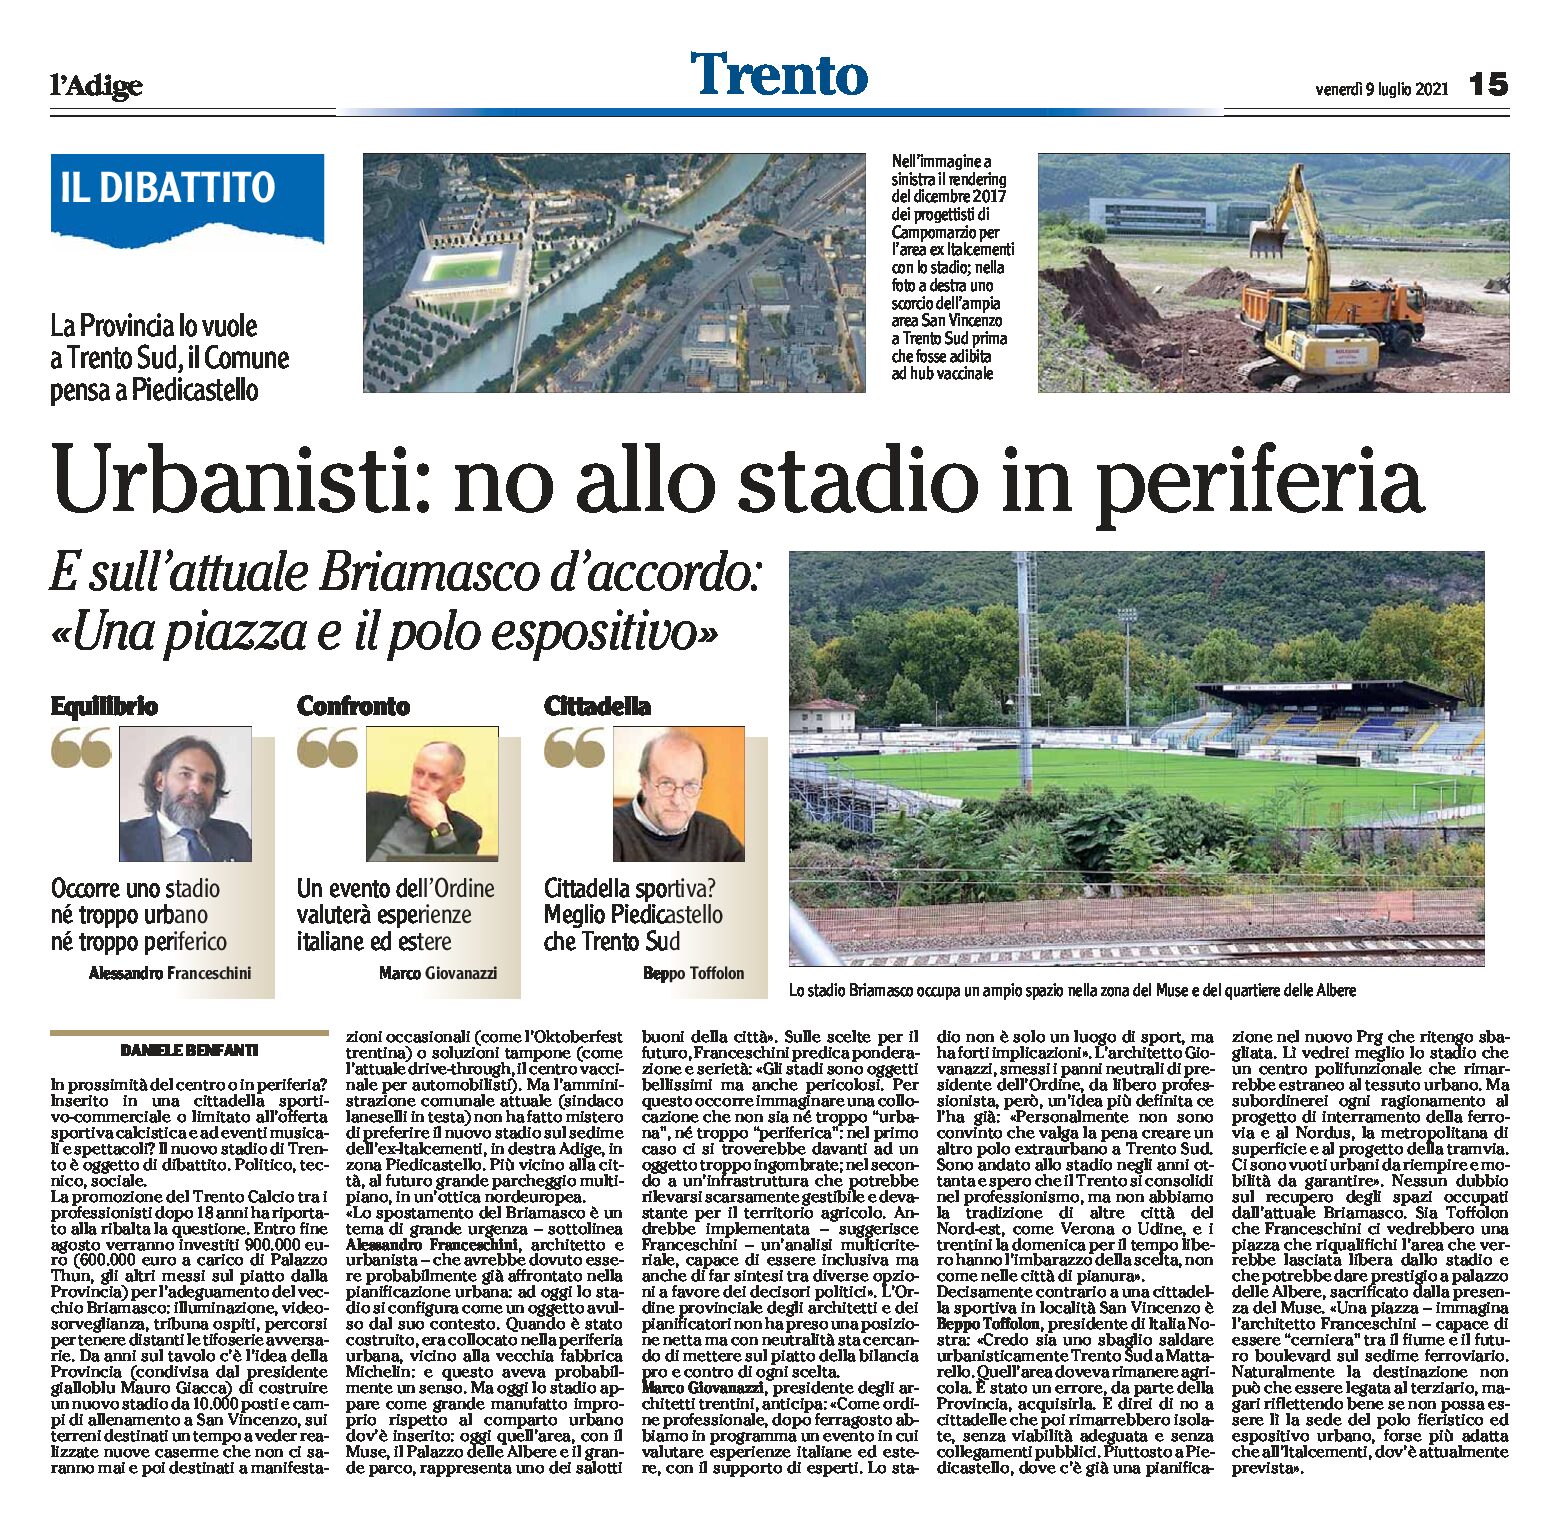 Trento: gli urbanisti Franceschini, Giovanazzi e Toffolon, no allo stadio in periferia